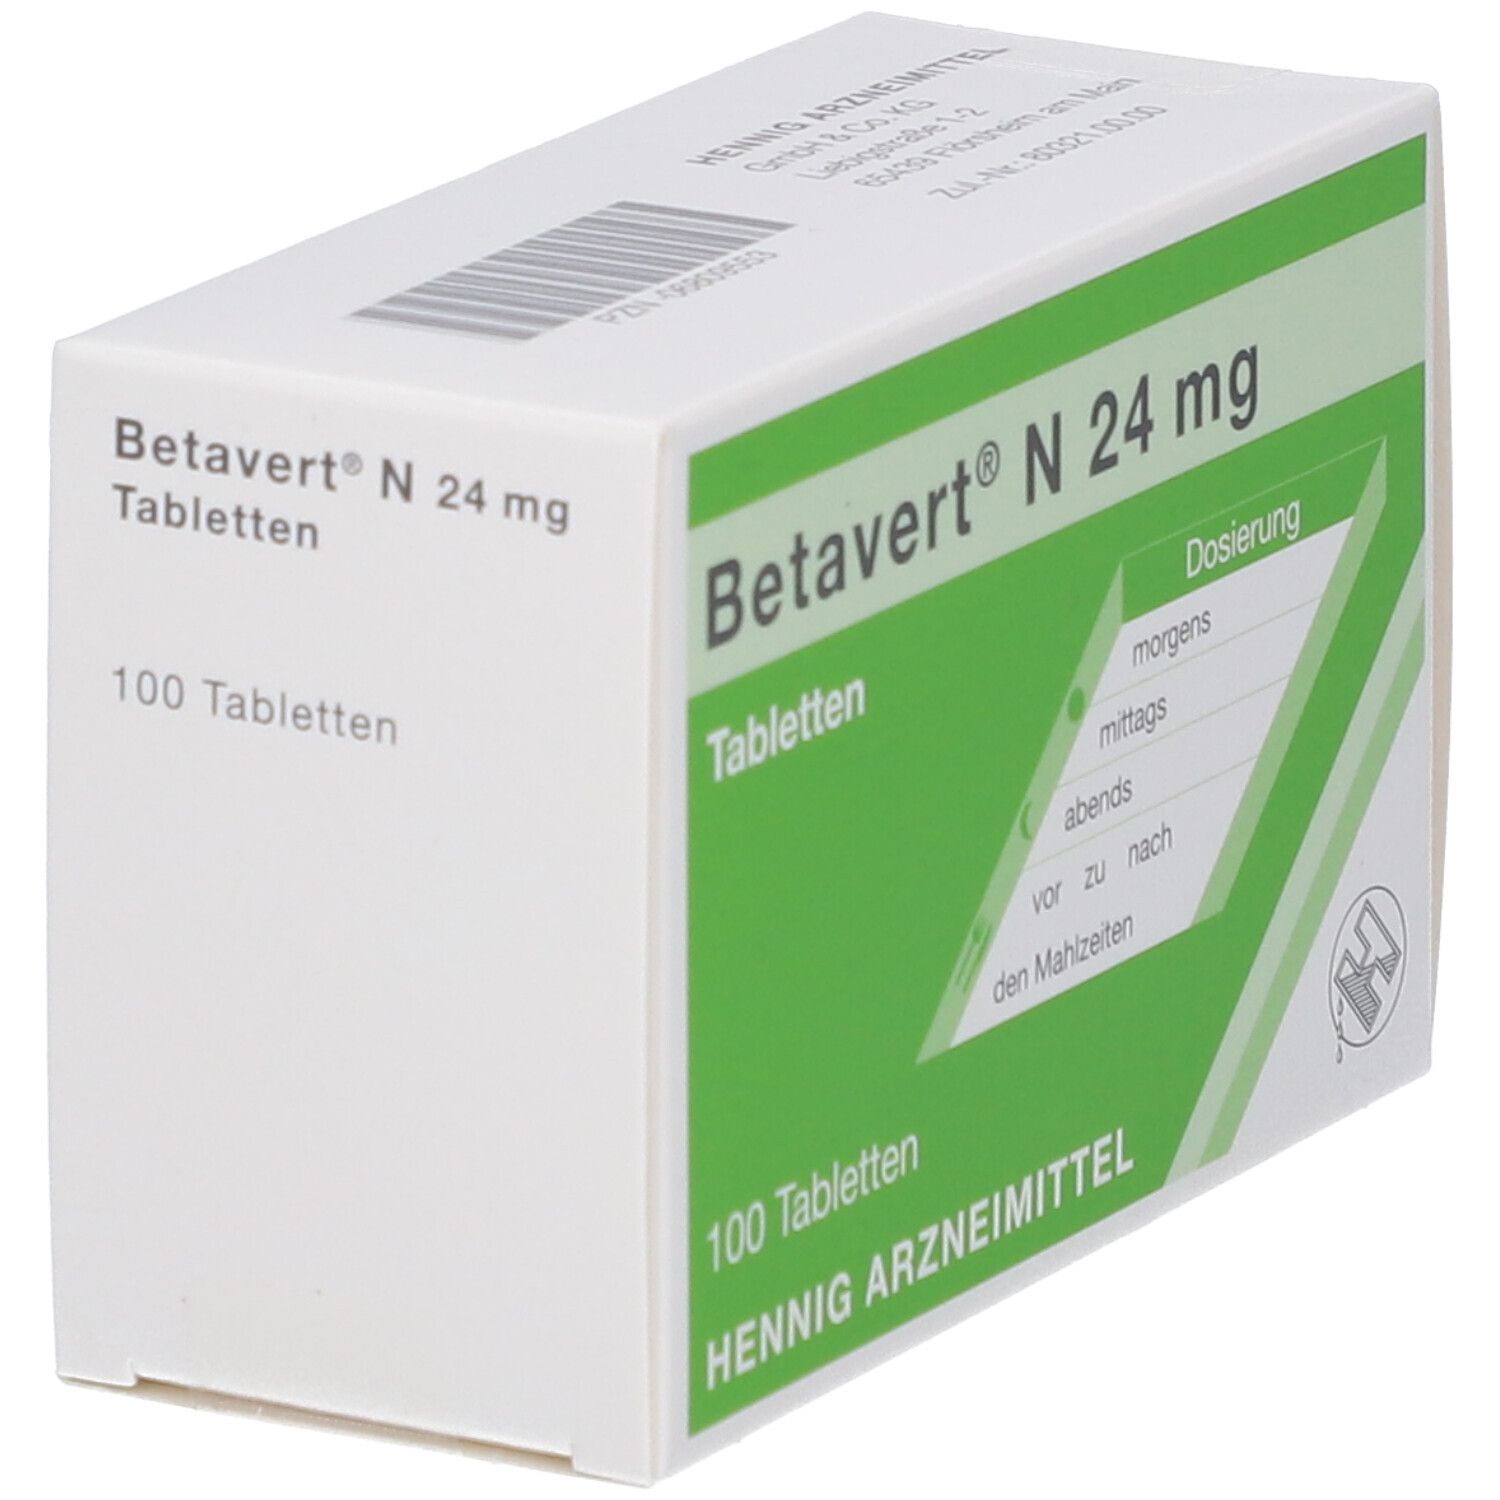 Betavert® N 24 mg